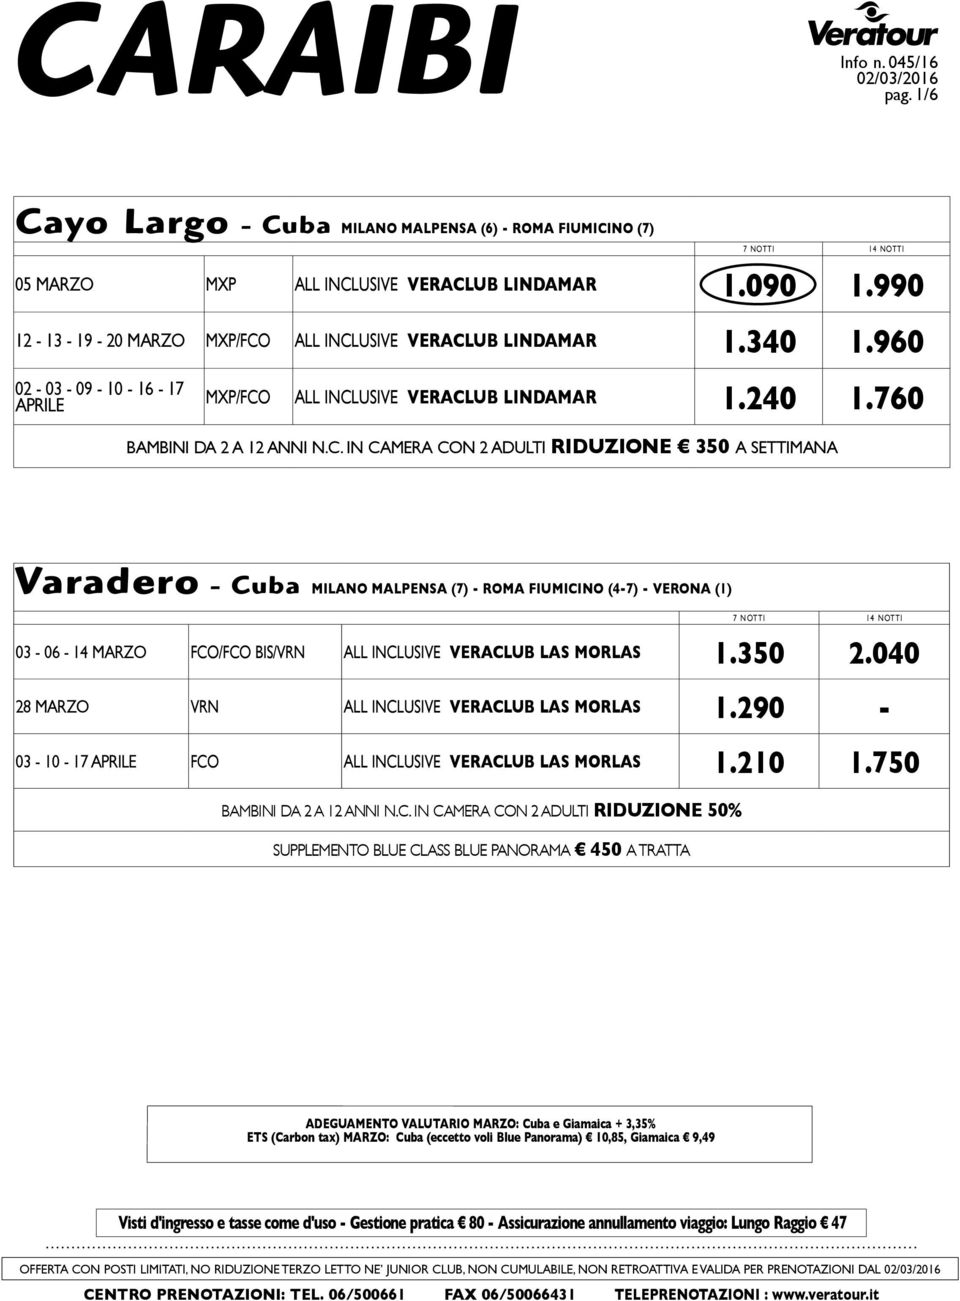 ALL INCLUSIVE VERACLUB LINDAMAR 1.240 1.760 BAMBINI DA 2 A 12 ANNI N.C. IN CAMERA CON 2 ADULTI RIDUZIONE 350 A SETTIMANA Varadero - Cuba MILANO MALPENSA (7) - ROMA FIUMICINO (4-7) - VERONA (1) 03-06 - 14 MARZO FCO/FCO BIS/VRN ALL INCLUSIVE VERACLUB LAS MORLAS 1.